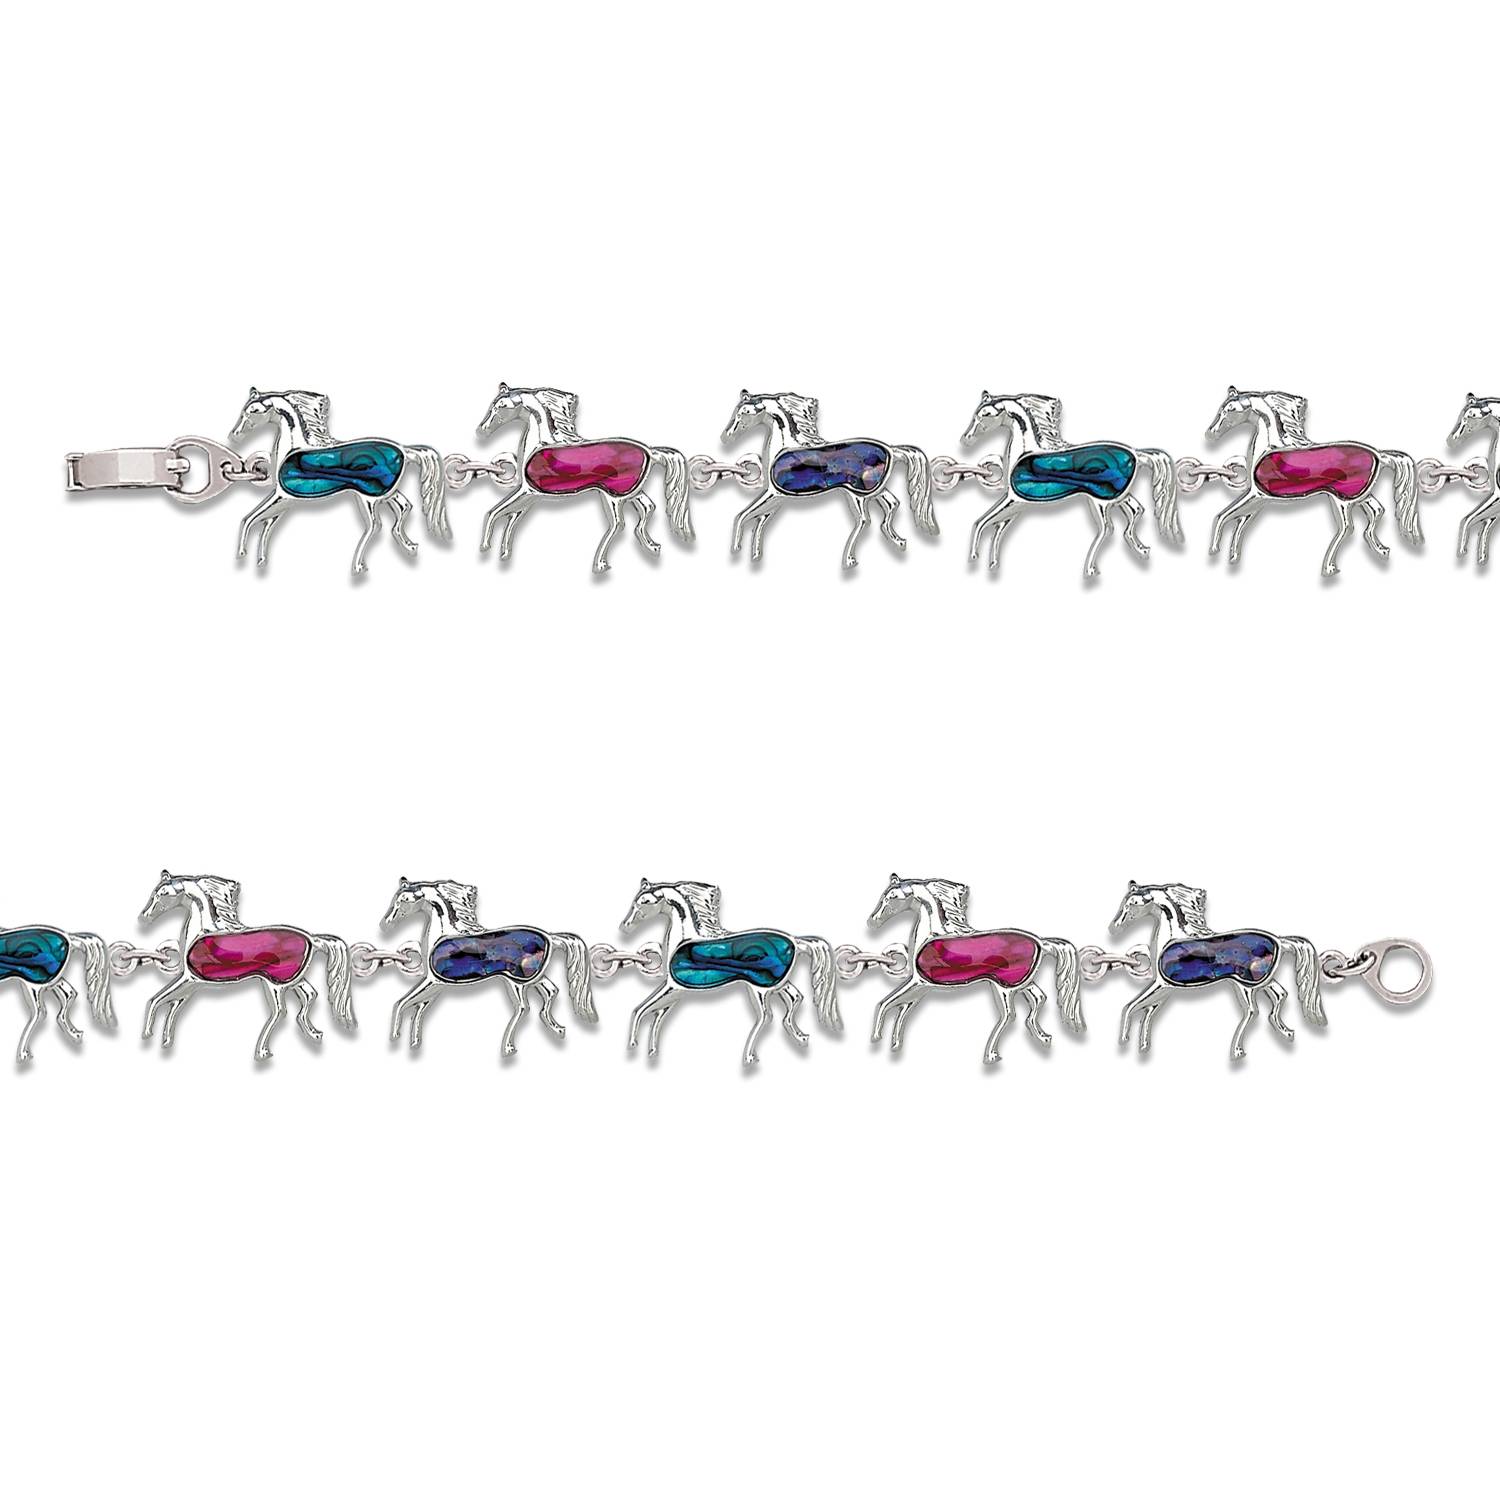 Paua shell horse pony kids bracelet western jewelry 